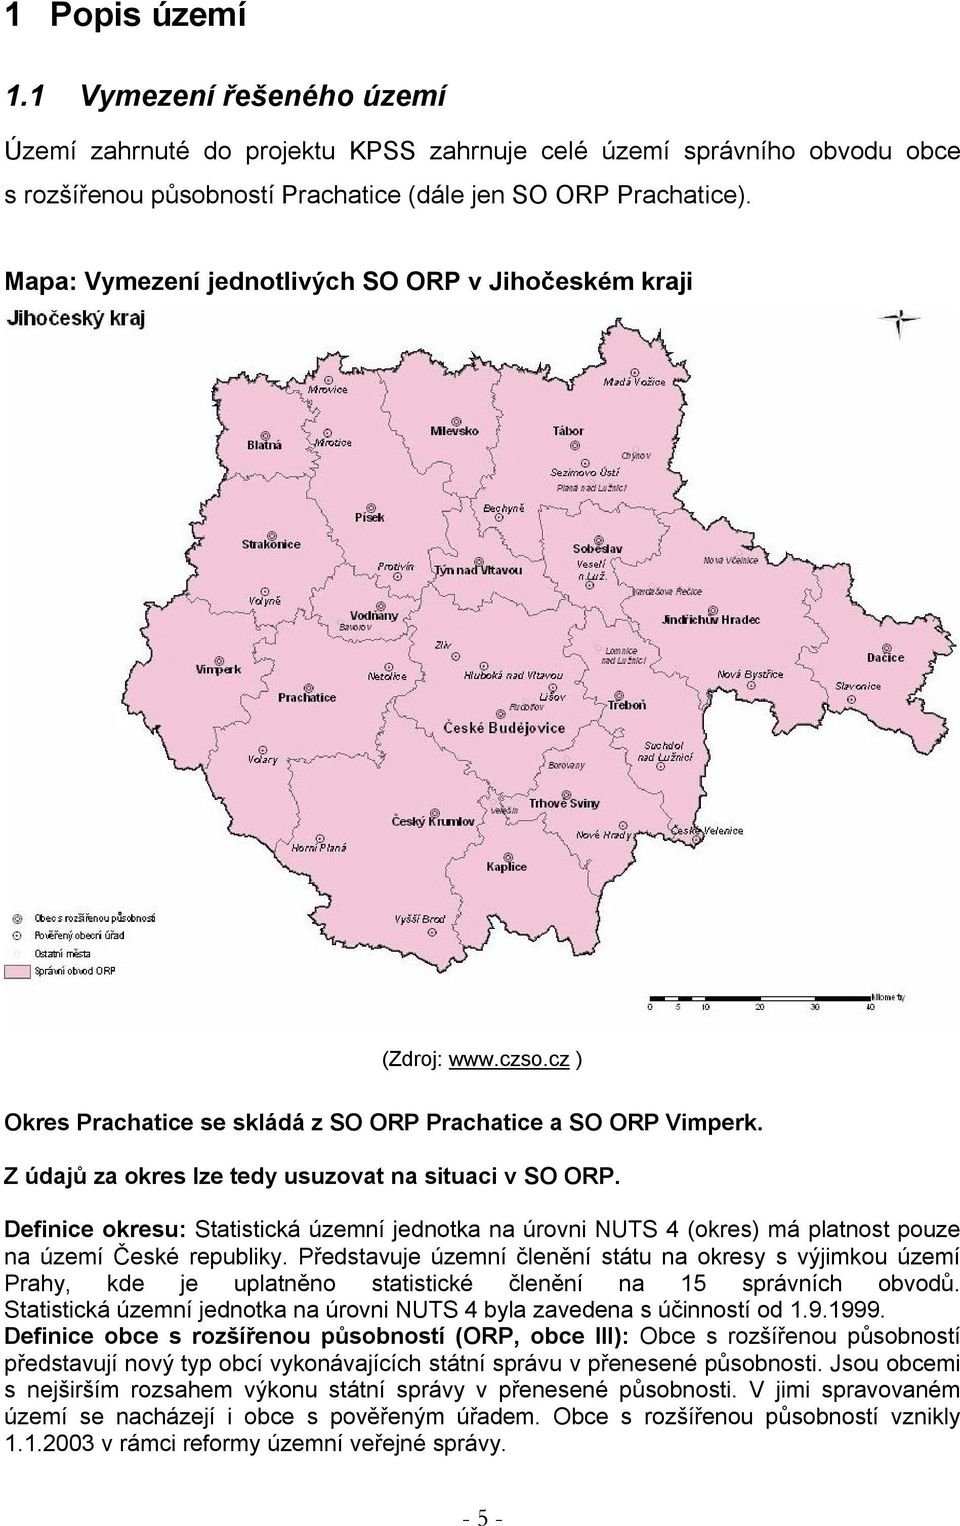 Definice okresu: Statistická územní jednotka na úrovni NUTS 4 (okres) má platnost pouze na území České republiky.